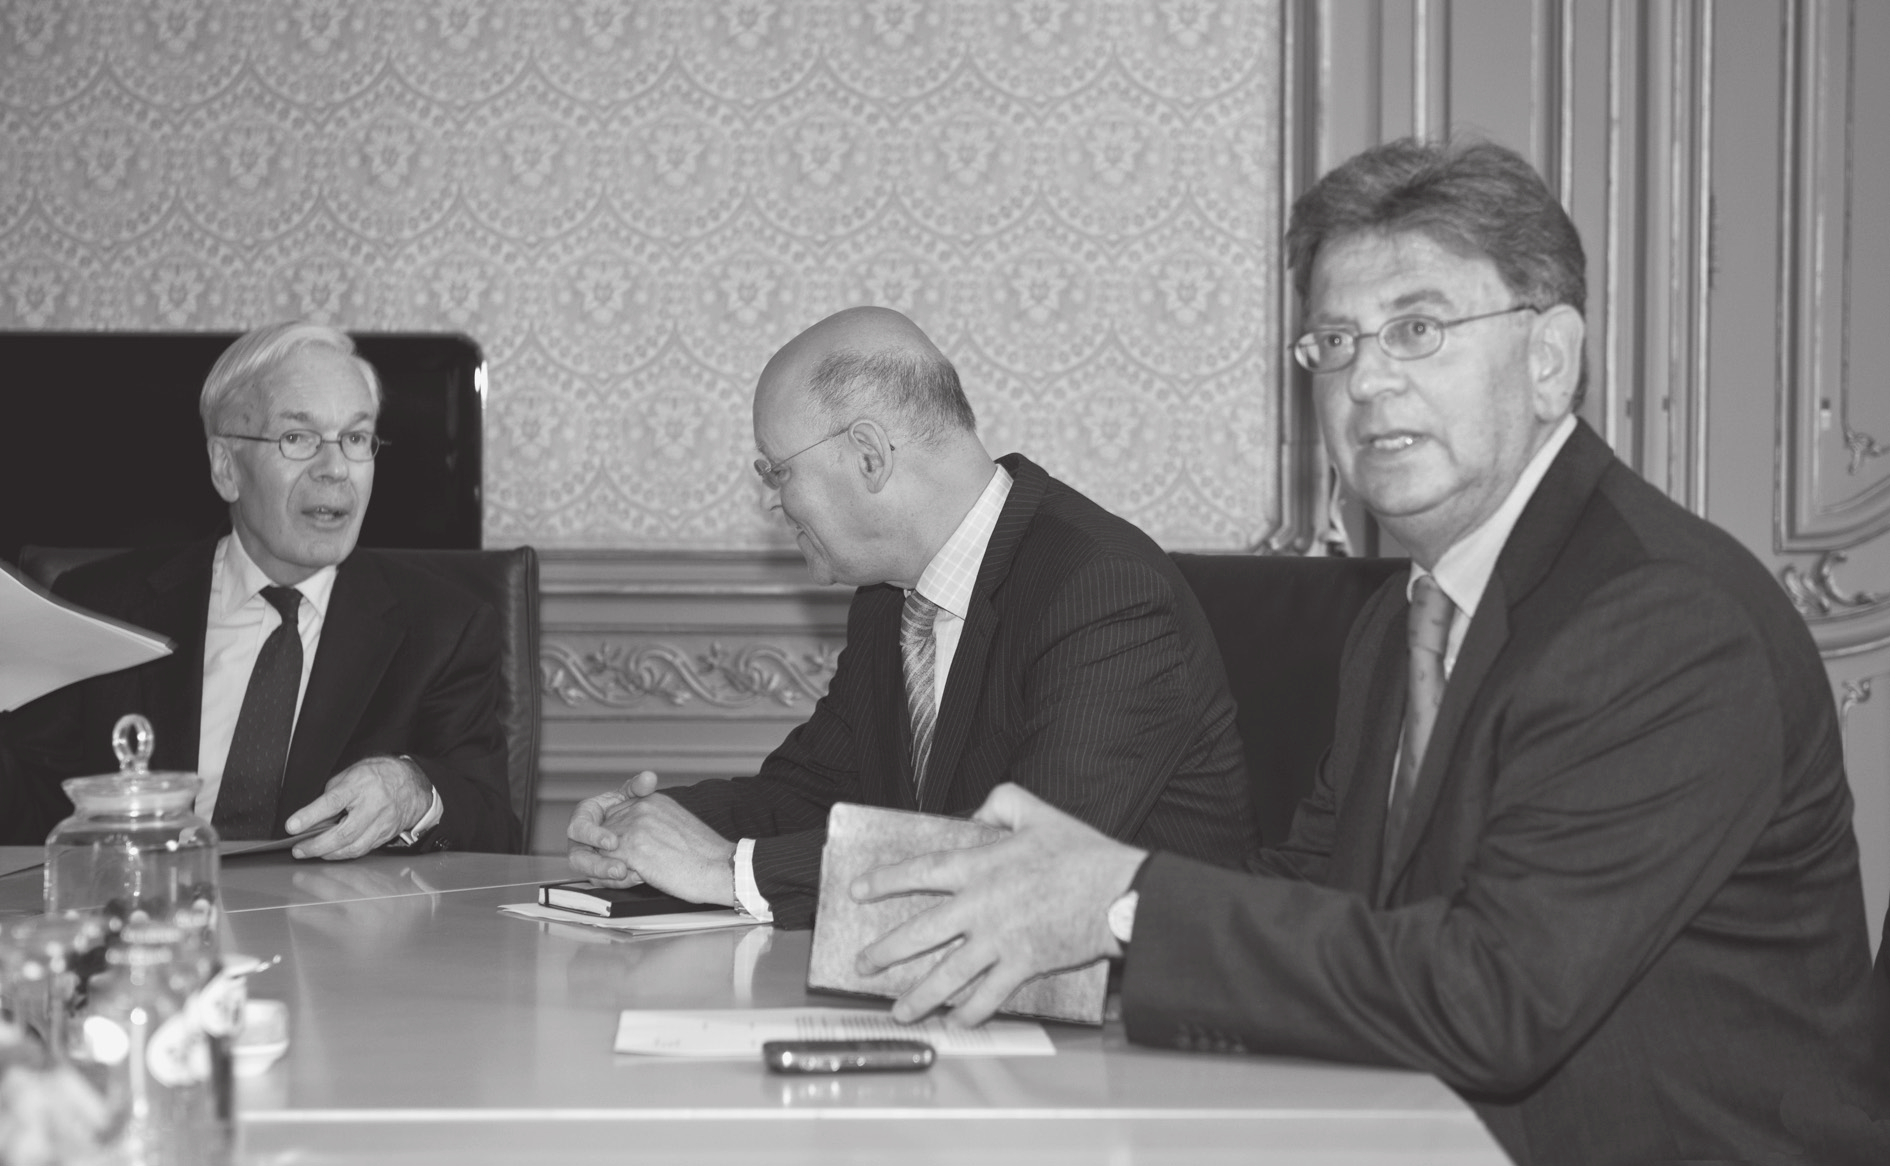 de informateur spreekt met zijn voorganger Informateurs Rosenthal en Wallage spreken met hun voorganger, oud-informateur Tjeenk Willink, juli 2010. [rvd/erik Maas] gedaan.